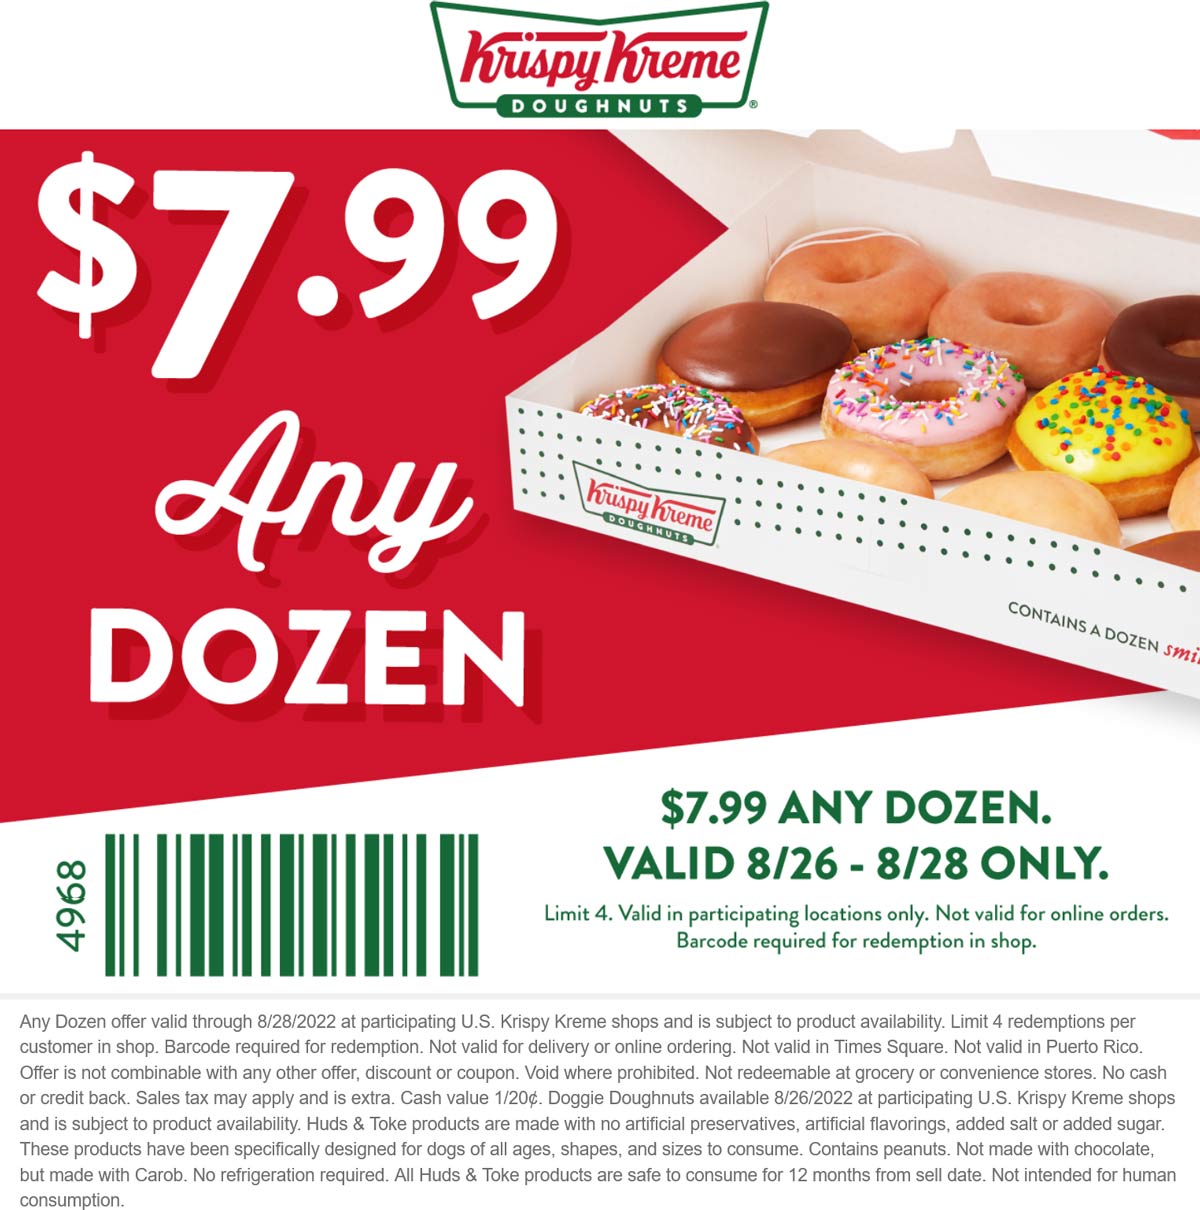 Krispy Kreme restaurants Coupon  Any dozen for $8 at Krispy Kreme doughnuts #krispykreme 